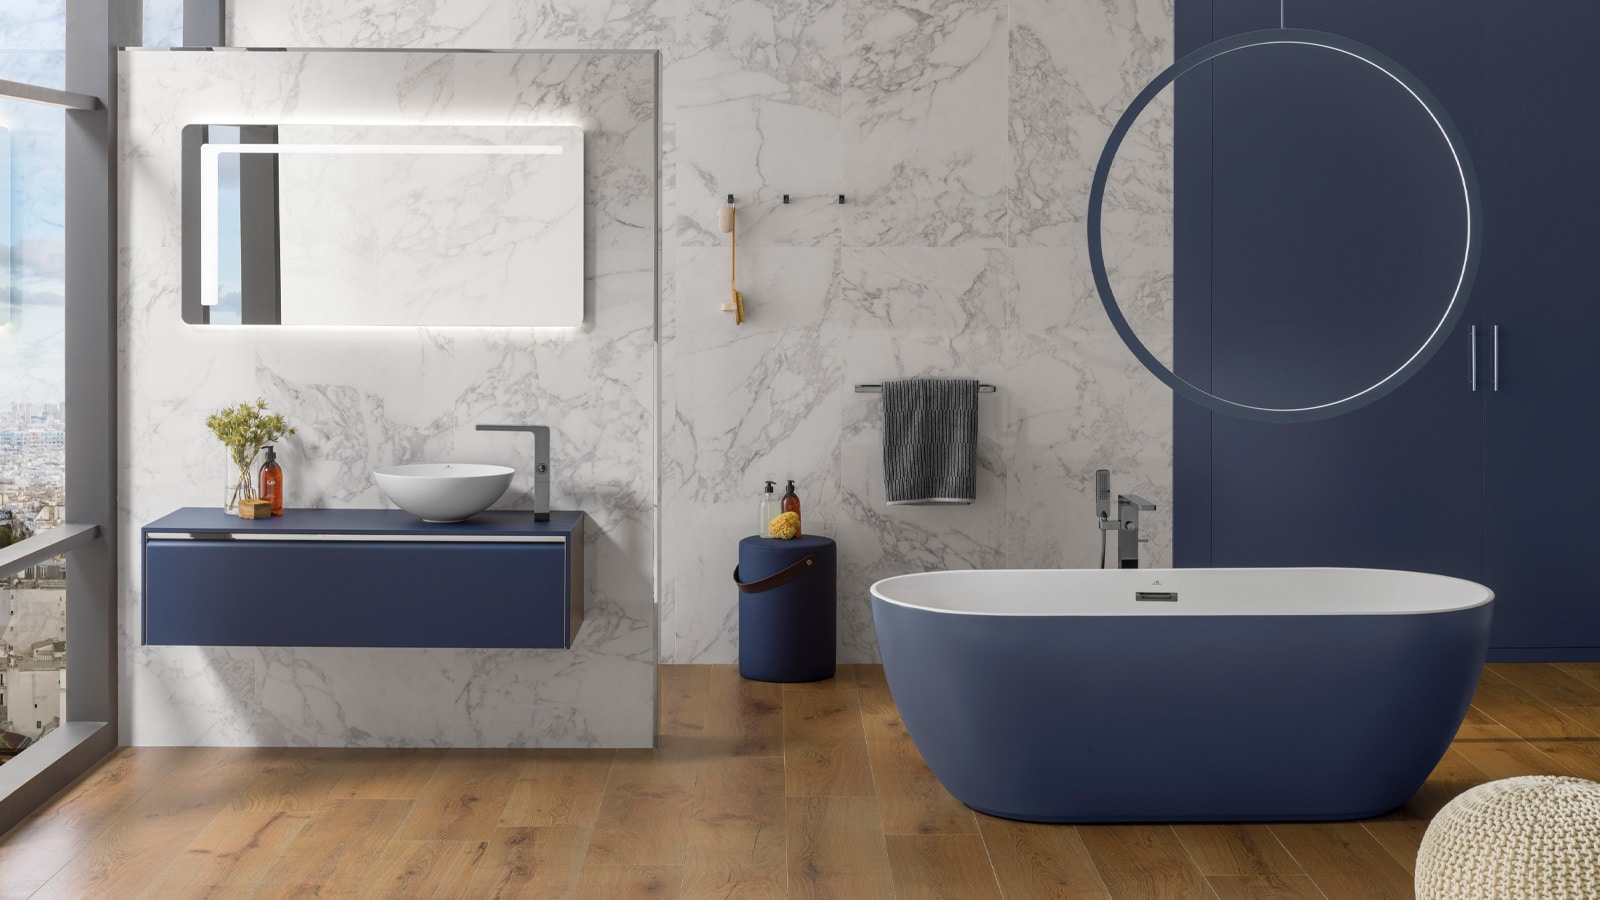 Idées pour une salle de bains tout en modernité avec la céramique de Porcelanosa